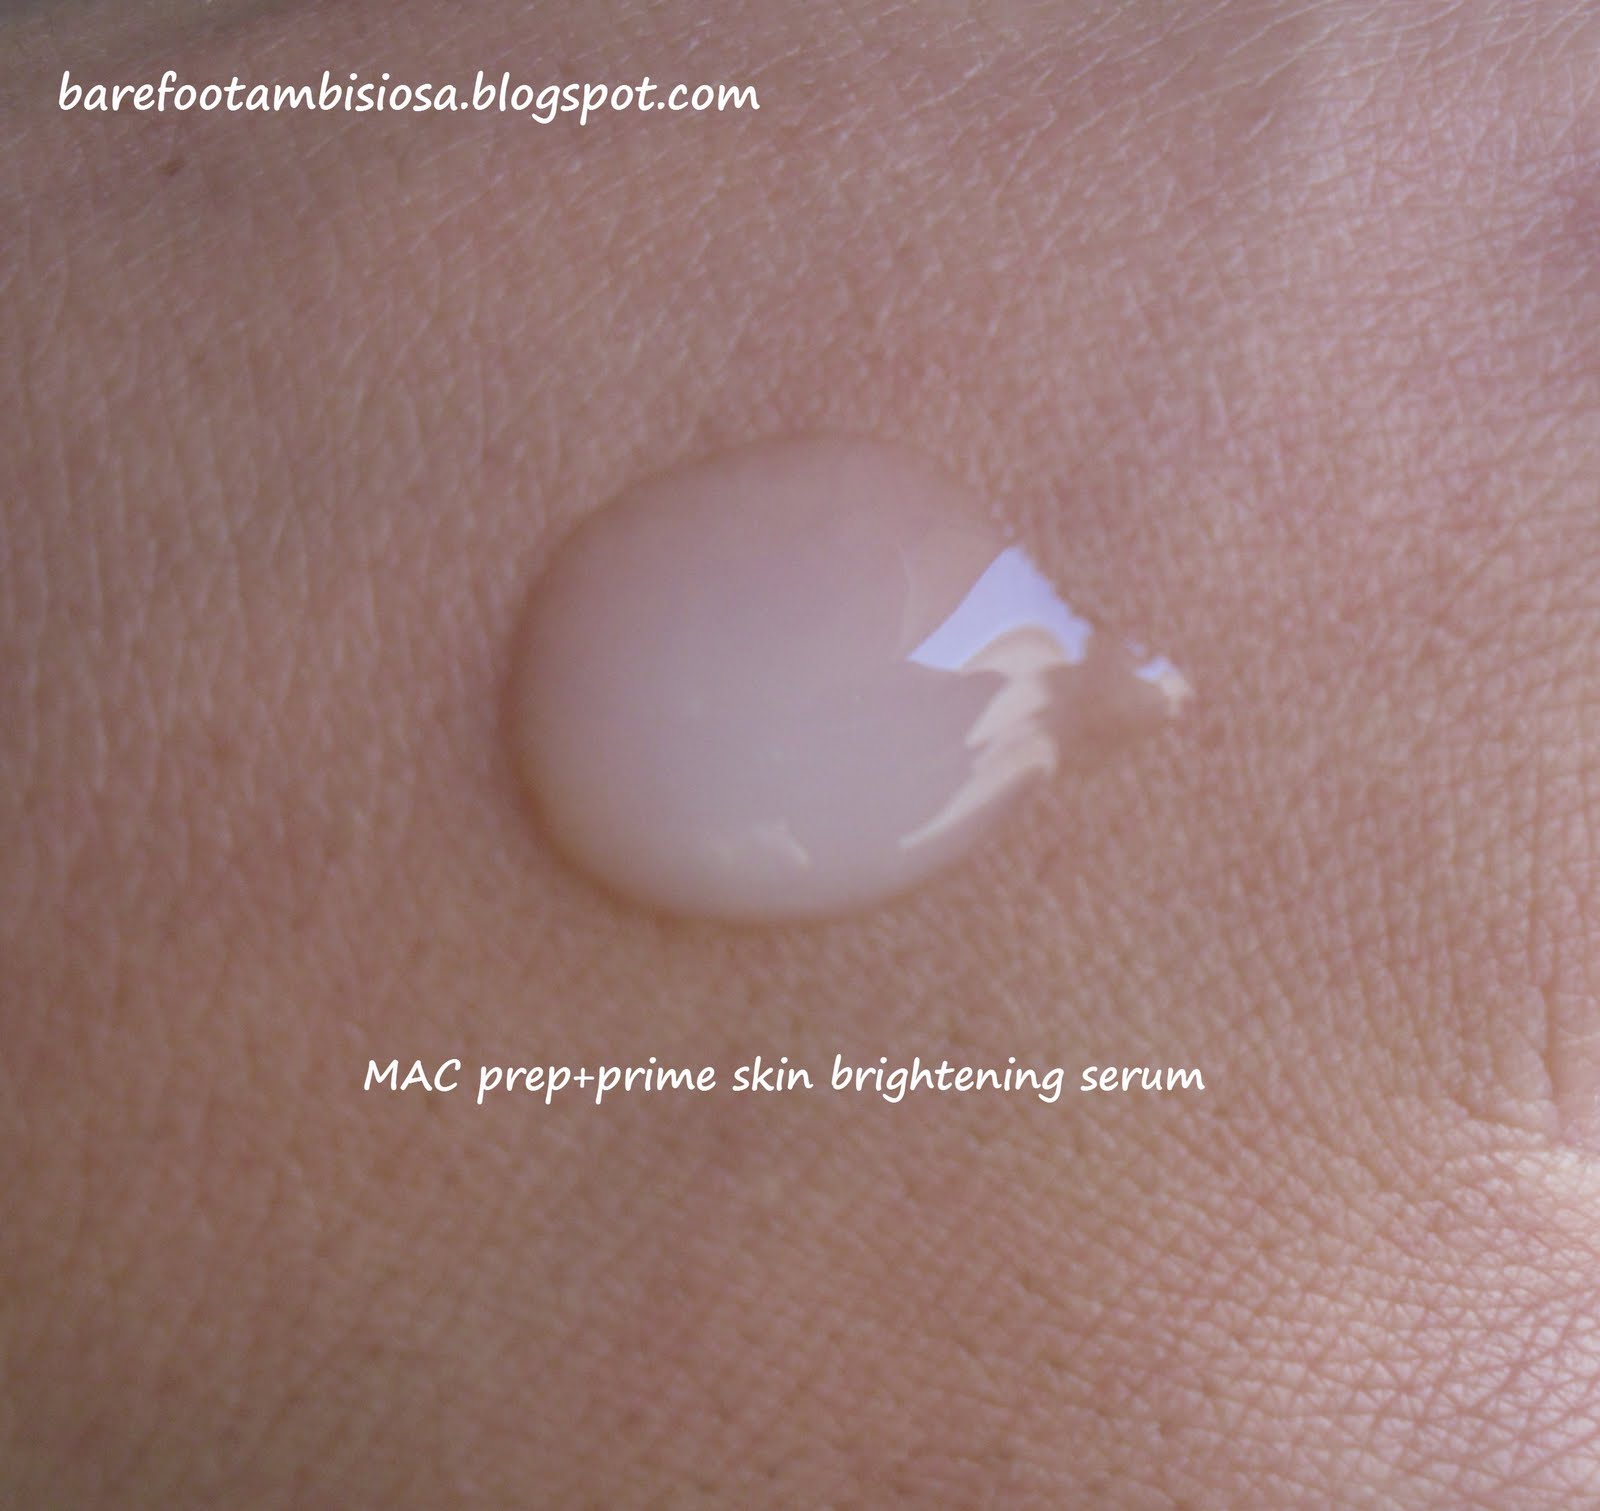 barefoot ambisiosa: MAC Prep+Prime Skin Brightening Serum